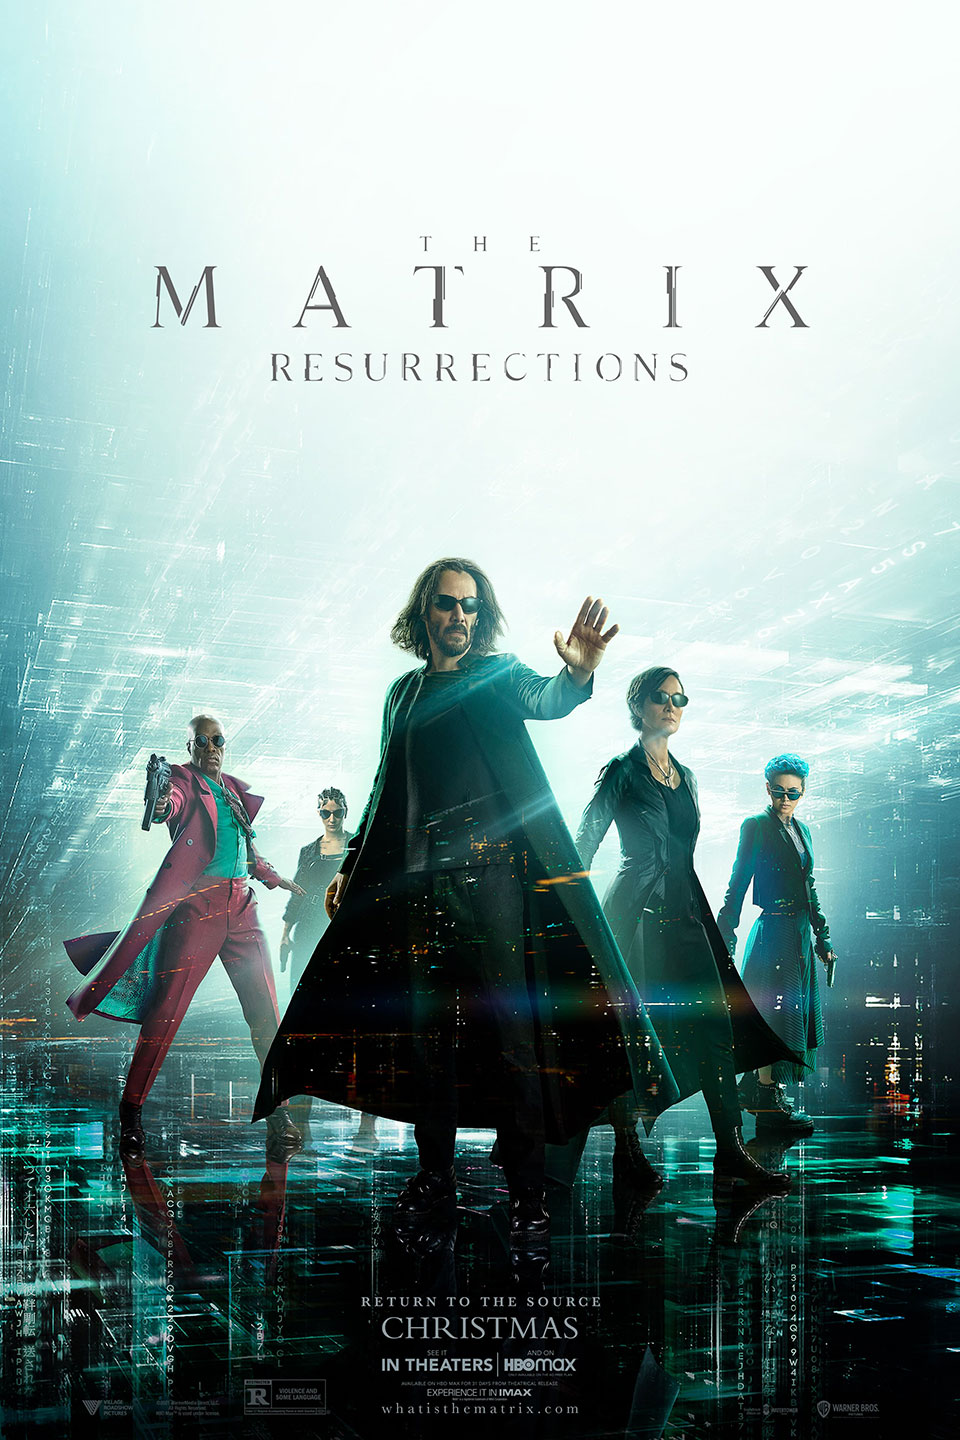 MATRIX - Resurrections